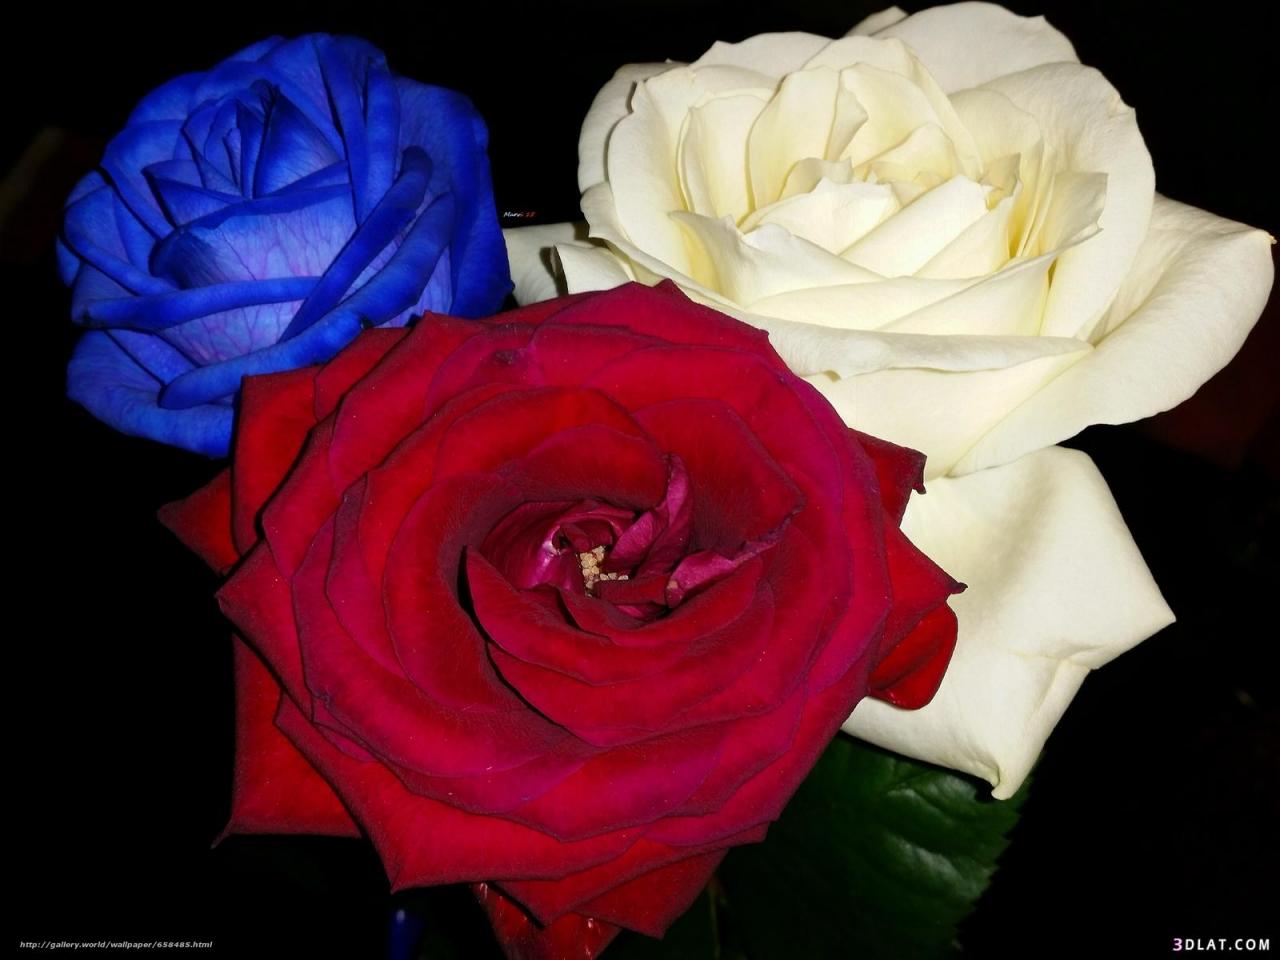 4476 10 صور اجمل ورد - اجمل الصور المعبرة عن الورود بسيمة سلامة